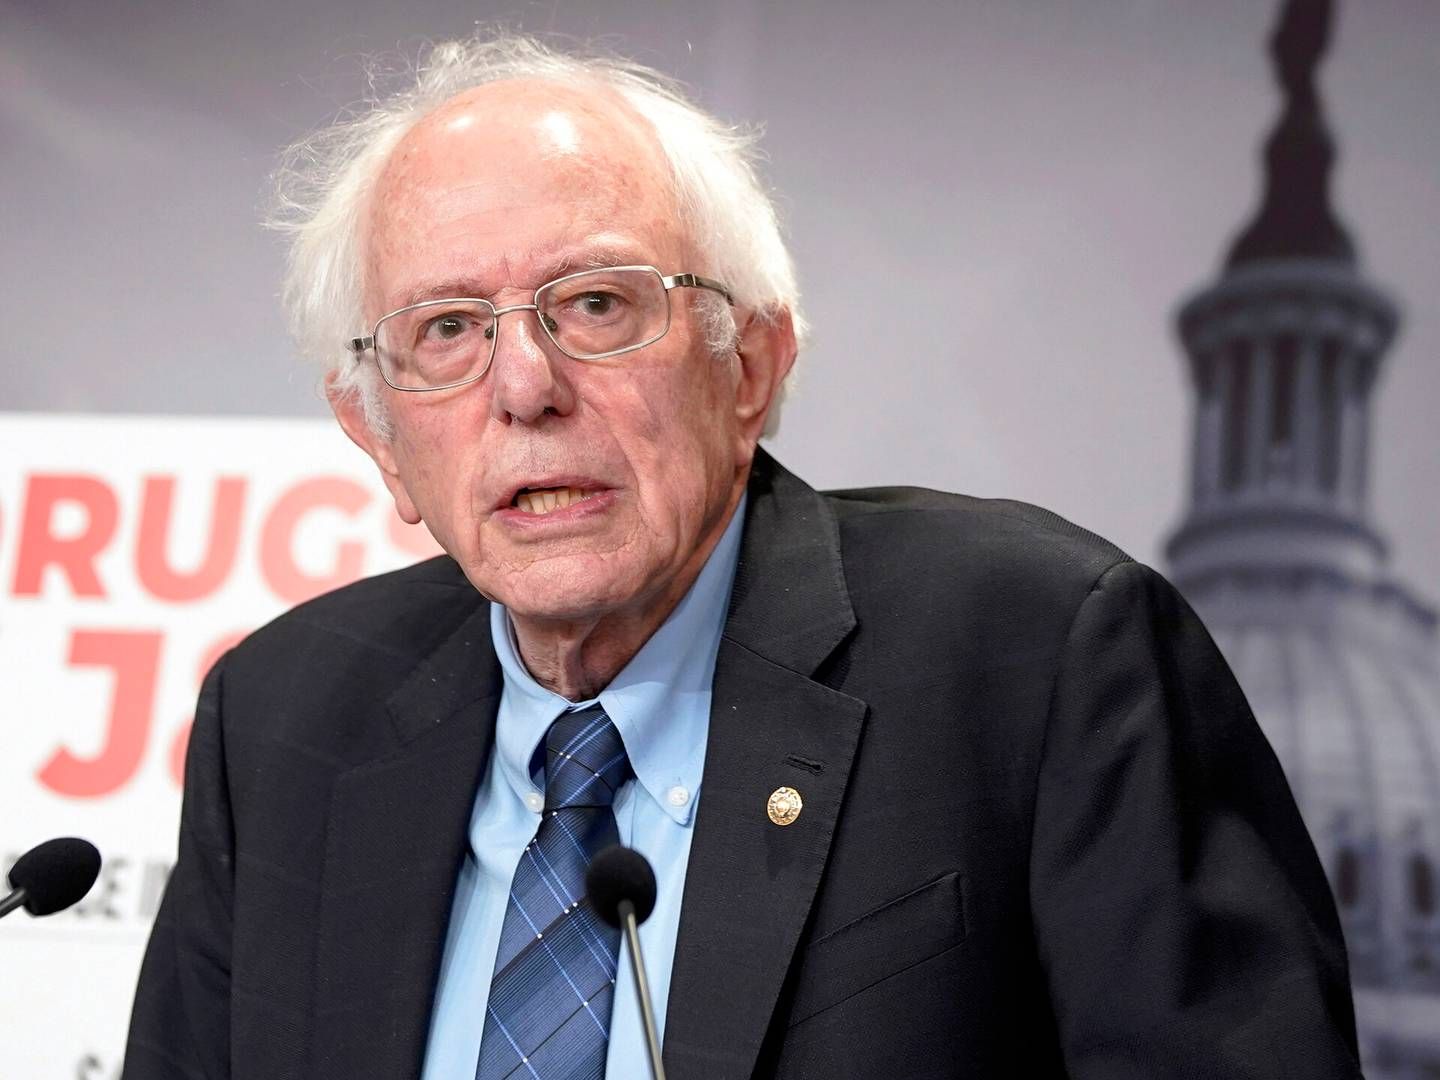 Senator Bernie Sanders langer ud mod Novo Nordisk i et debatindlæg mandag i Politiken | Foto: Mariam Zuhaib/AP/Ritzau Scanpix